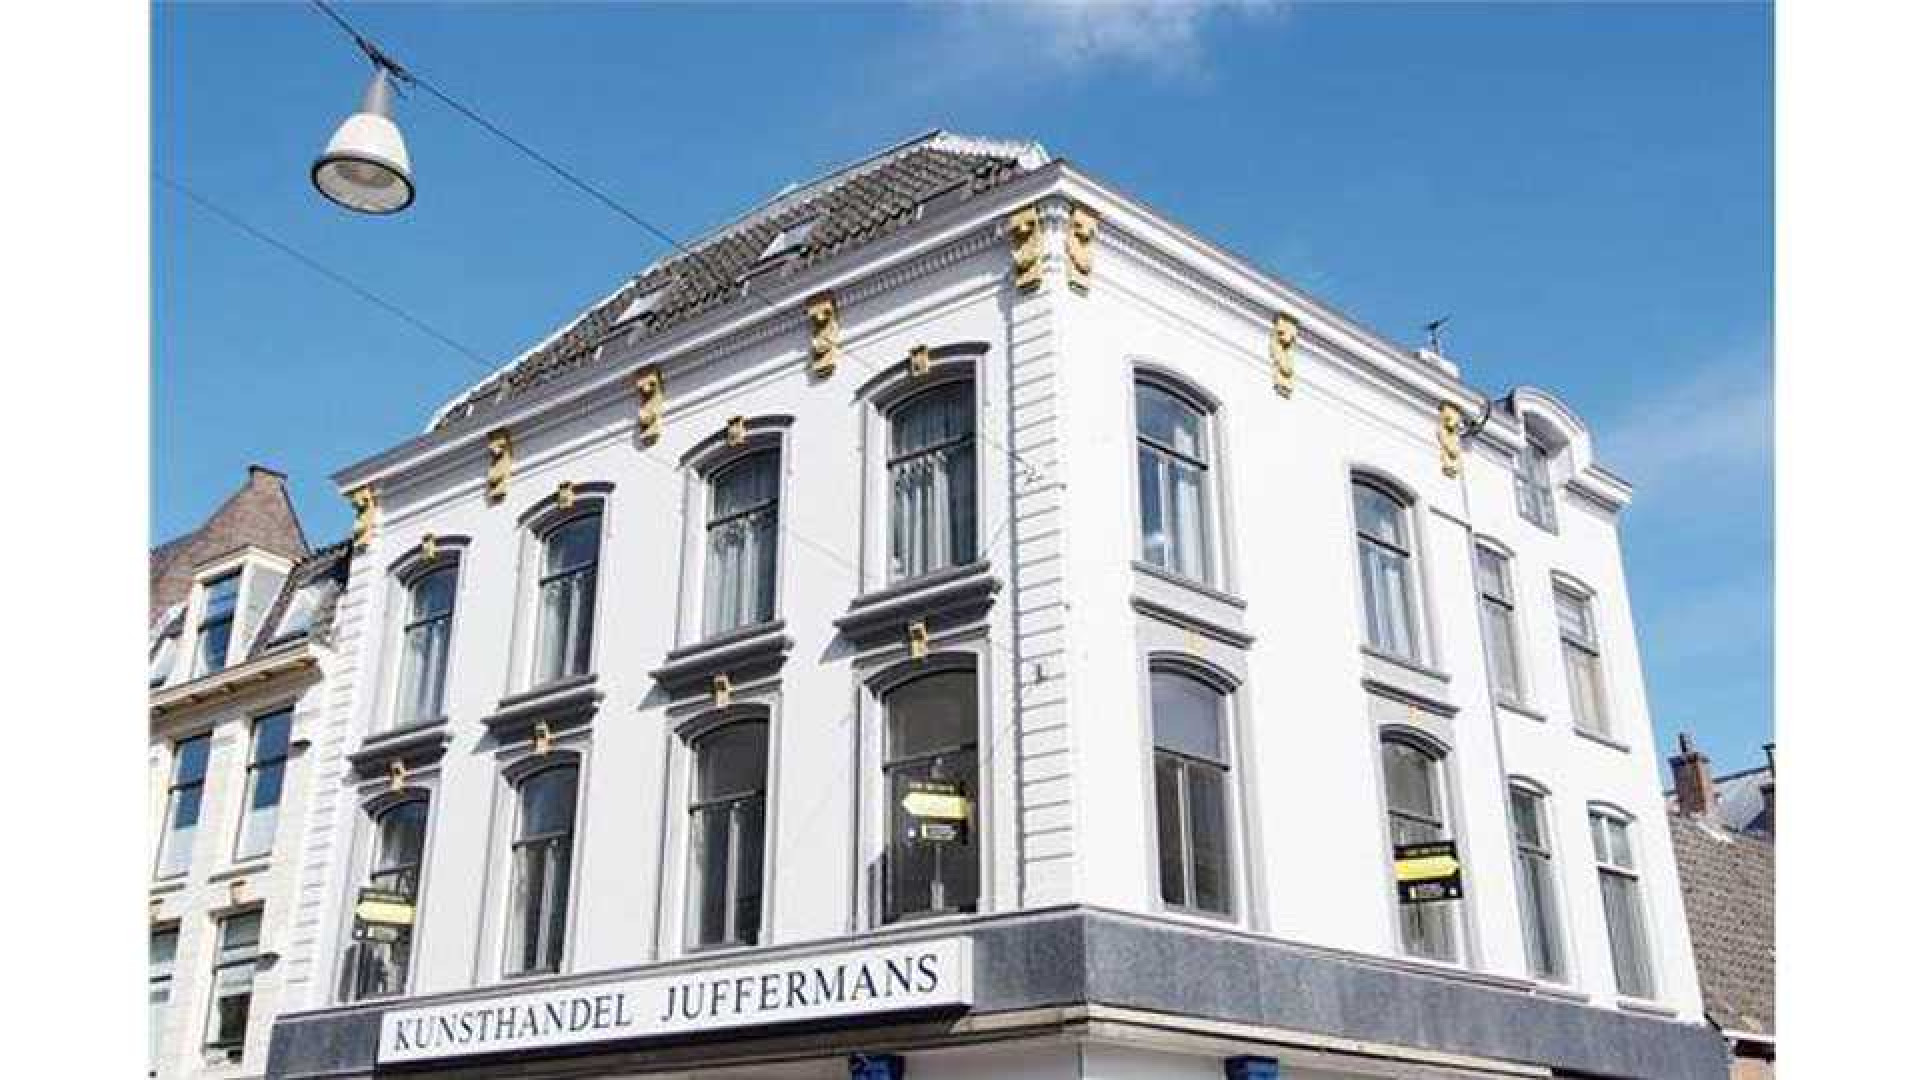 Charles Groenhuijsen huurt leuk appartement in centrum van Utrecht. Zie foto's 1